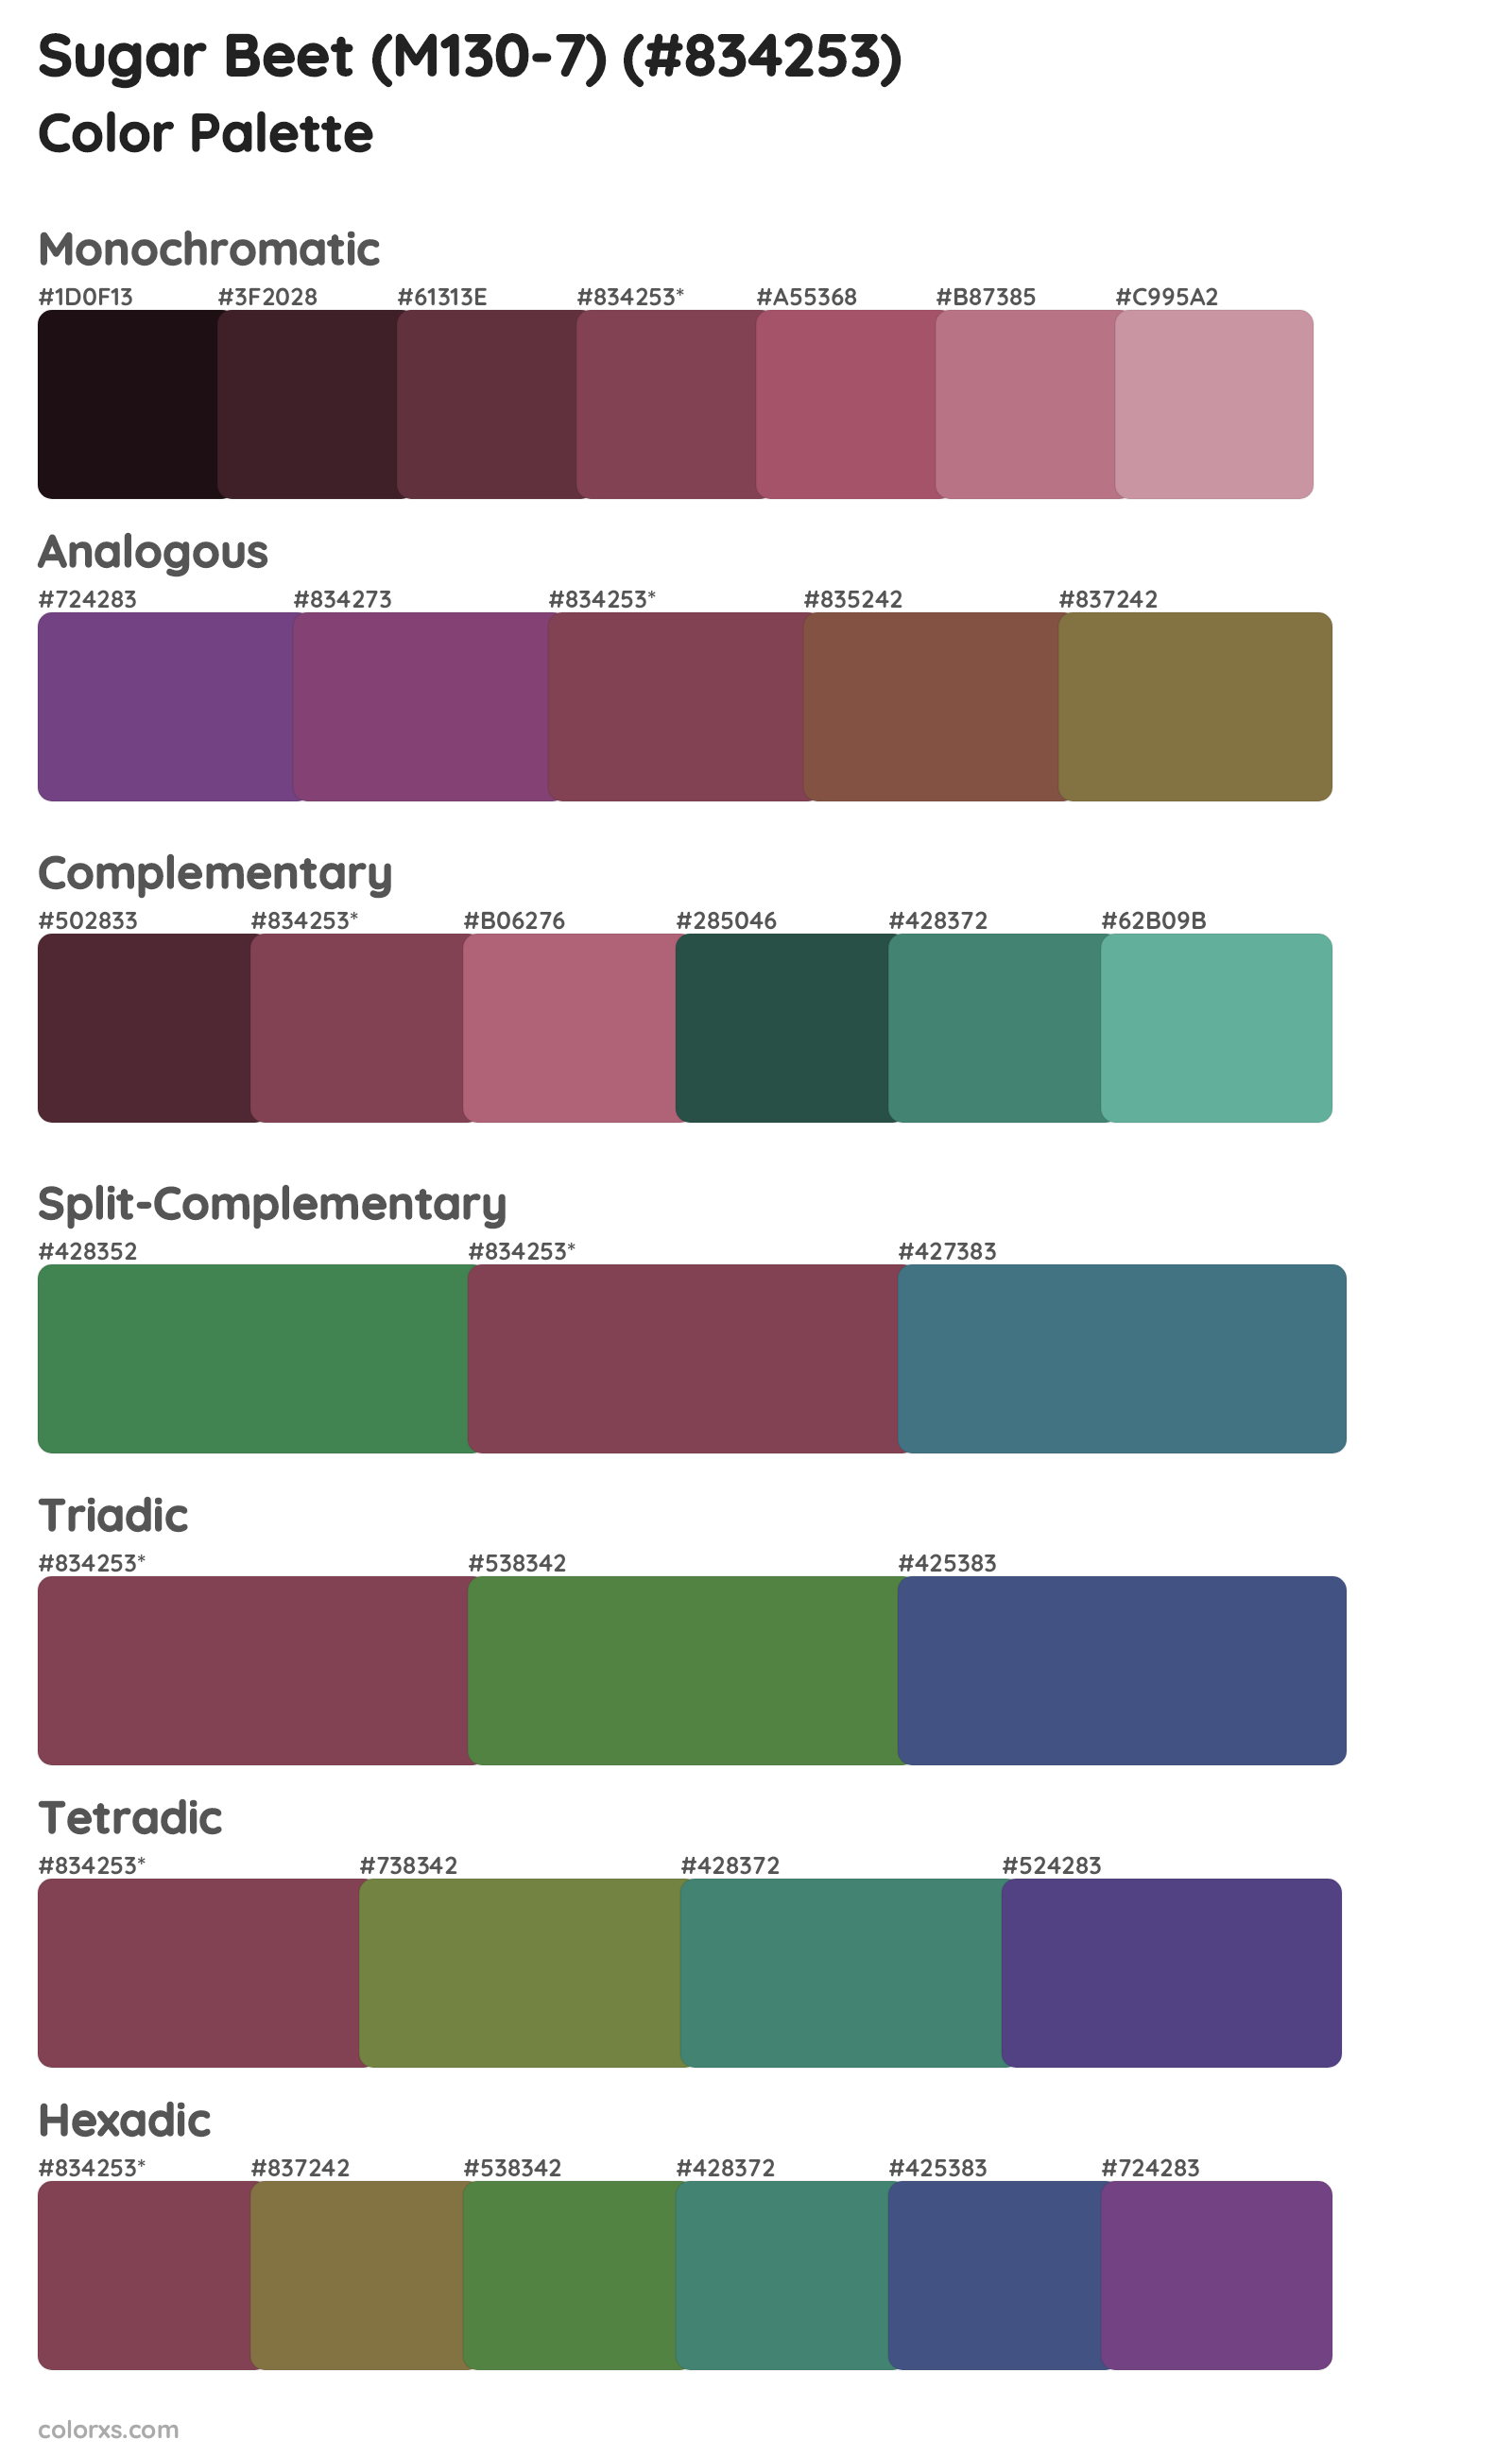 Sugar Beet (M130-7) Color Scheme Palettes